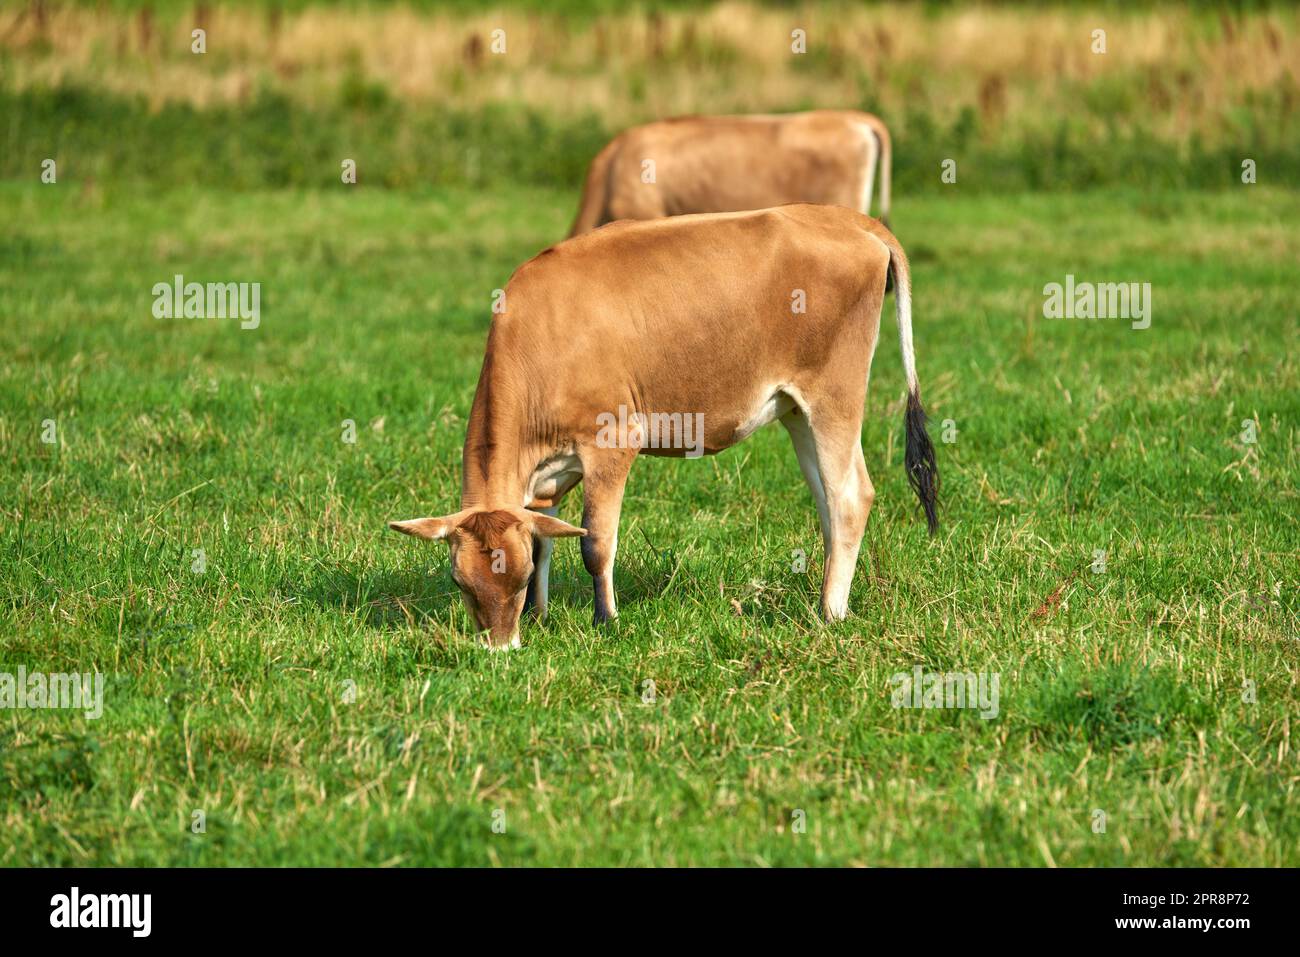 Zwei braune Kühe, die auf einem grünen Bio-Milchviehbetrieb auf dem Land weiden. Rinder oder Nutztiere auf einem offenen, leeren und weiten Wiesenfeld oder einer Wiese. Rinder auf landwirtschaftlichen und nachhaltigen Flächen Stockfoto